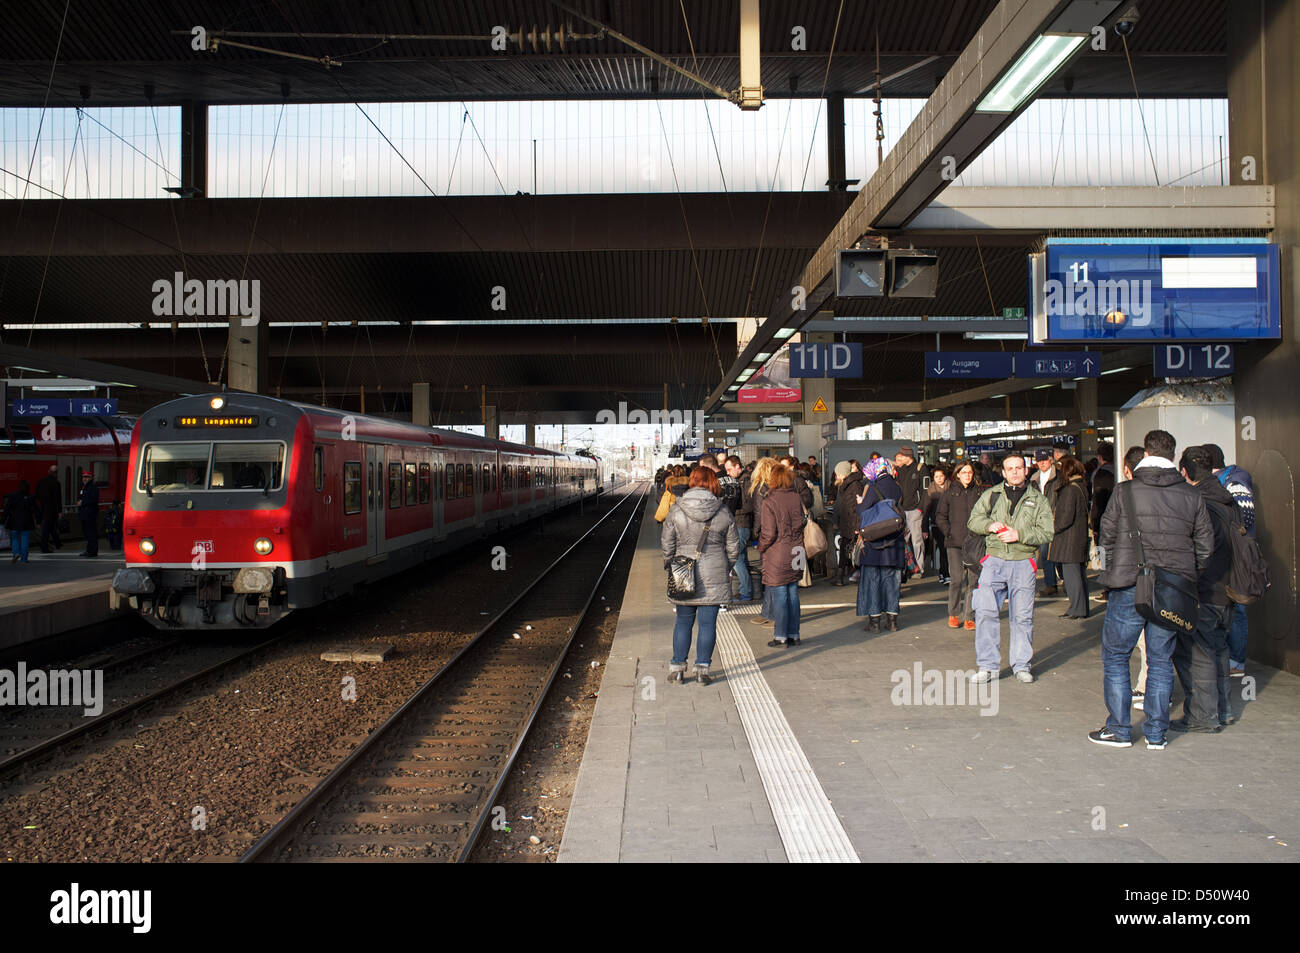 Dusseldorf HBF (main railway station) Germany Stock Photo - Alamy